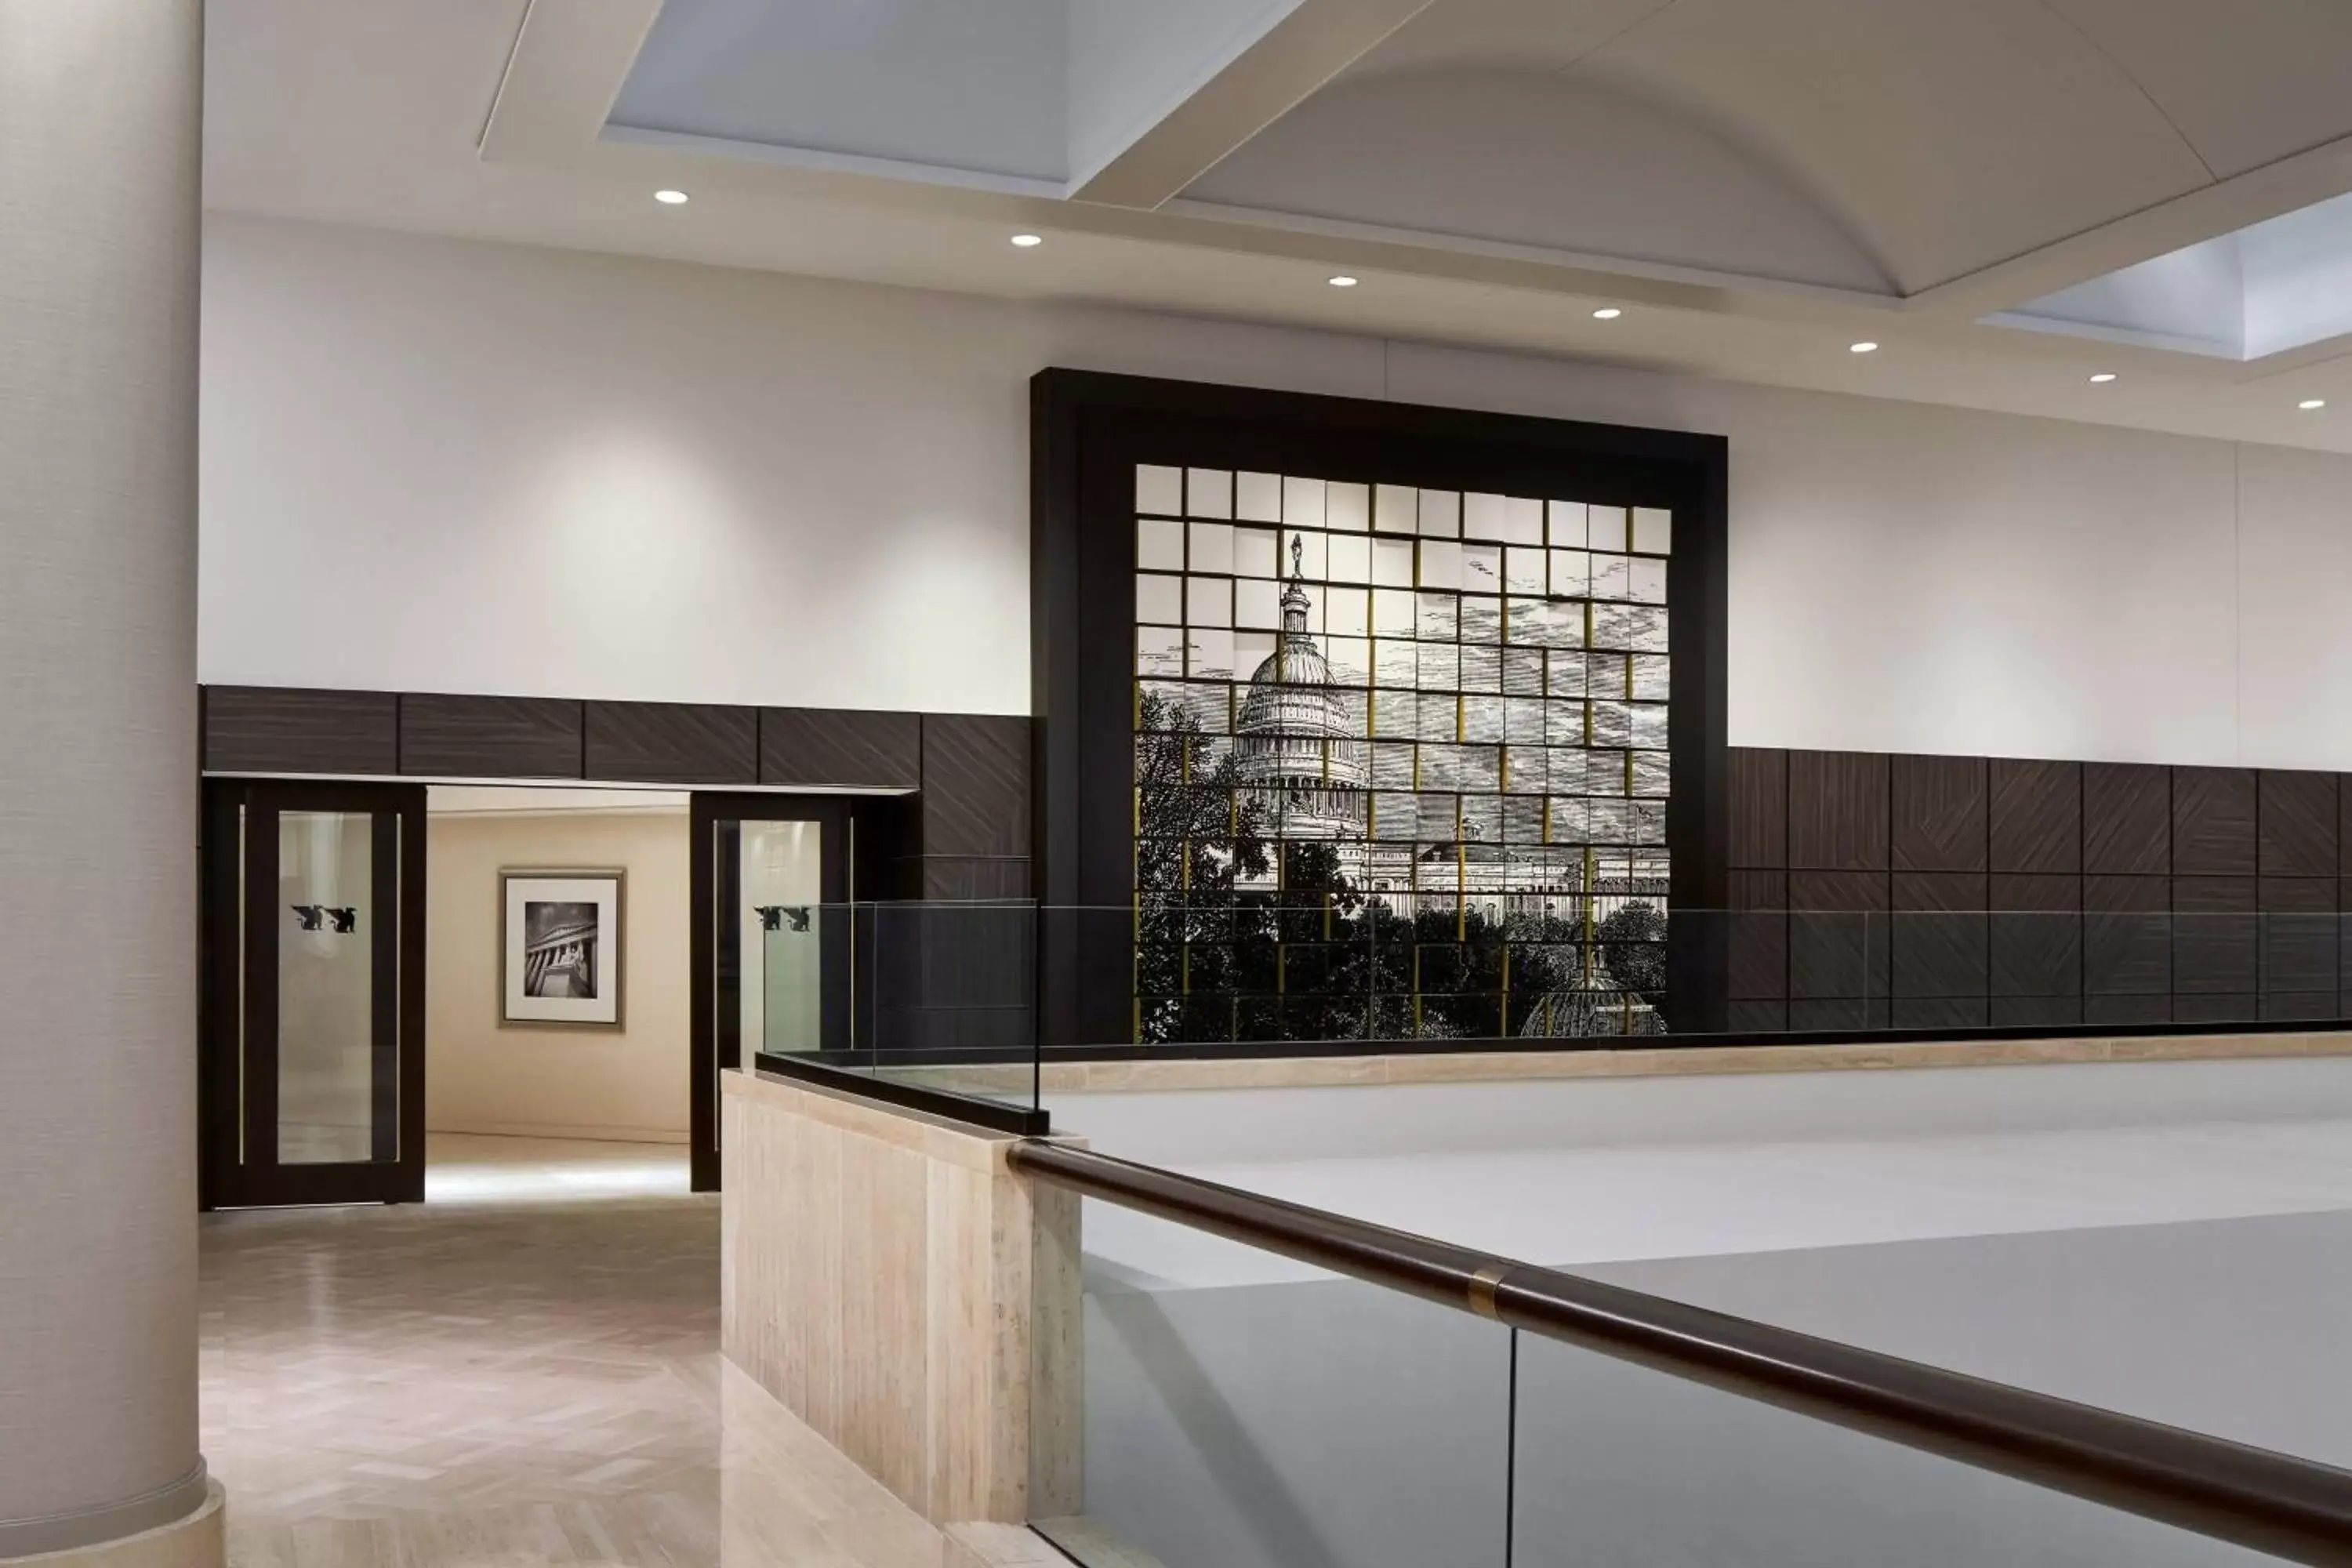 Lobby or reception, Lobby/Reception in JW Marriott Washington, DC